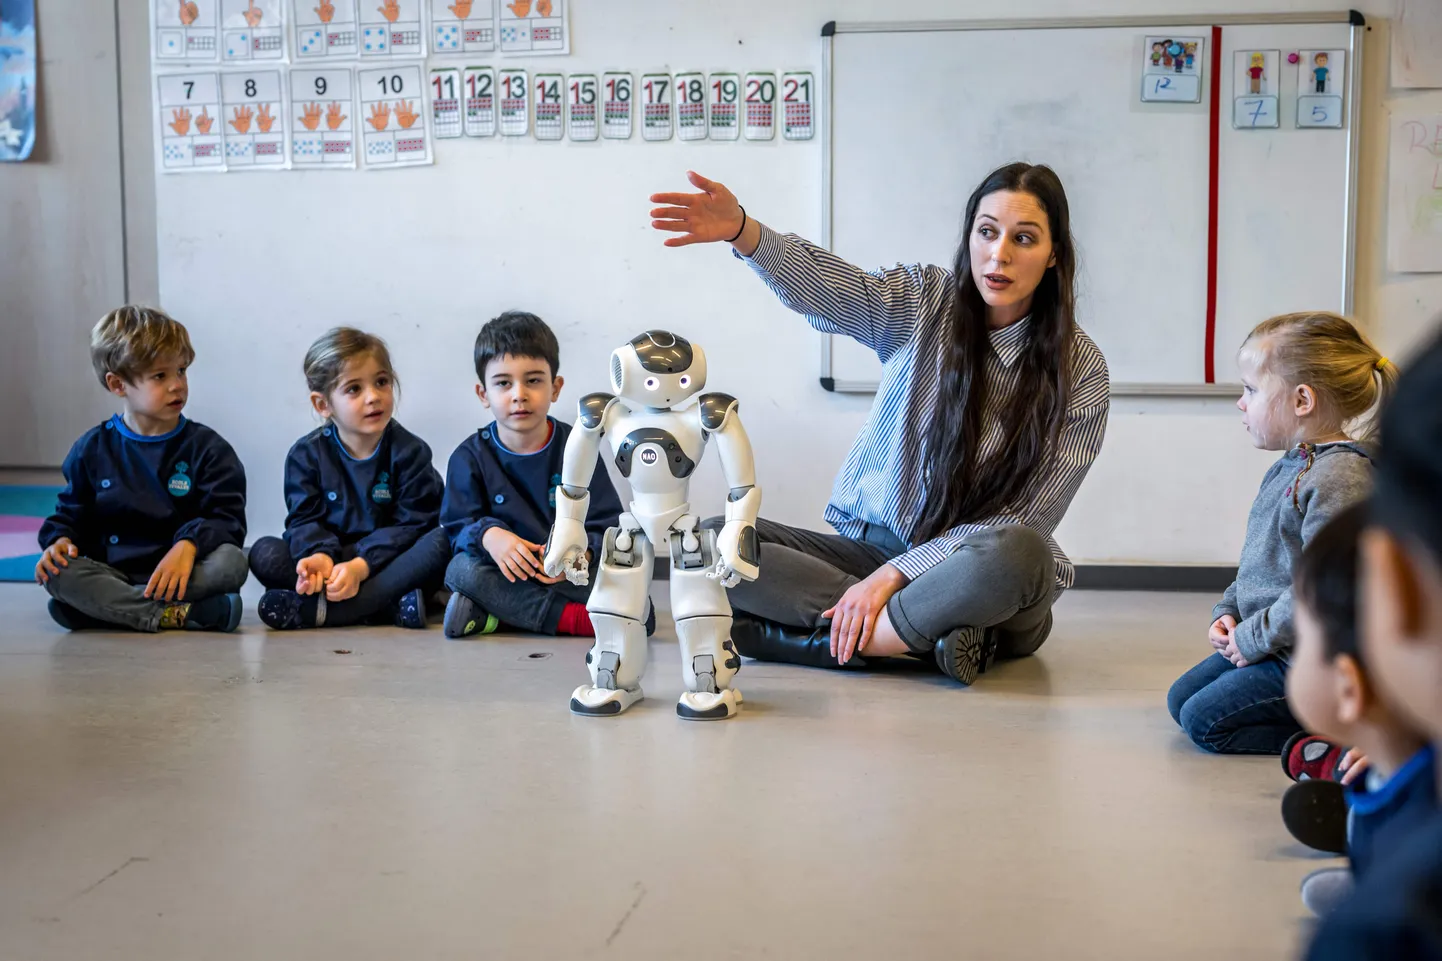 Õpetaja Eve L'Eplattenier ja koolieelikud suhtlevad 23. veebruaril 2024 Lääne-Šveitsis Lausanne'is asuvas Šveitsi Föderaalse Tehnoloogiainstituudi ülikoolilinnakus asuvas lasteaias La Nanosphere hariva ja interaktiivse roboti Naoga. Teadlaste uuring kinnitab, et lapsed võivadki roboteid usaldada kohati rohkem kui inimesi. Illustreerival pildil olijad pole mainitud uuringuga seotud.